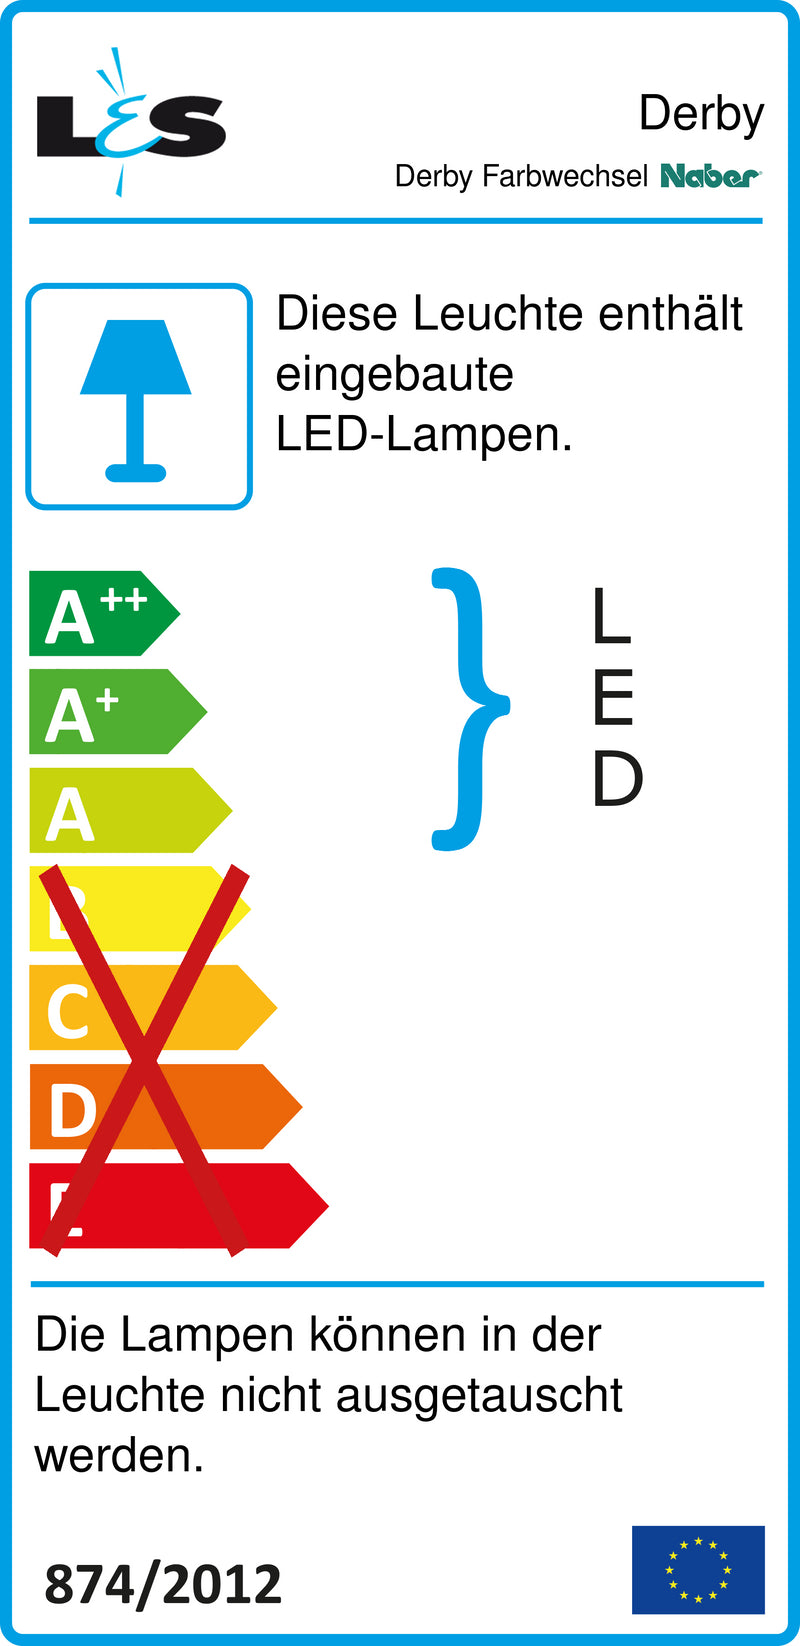 E-Label zu Zeichnung zu Derby Farbwechsel LED als Variante L 400 mm, 21 LED, 5,04 W, alufarbig von Naber GmbH in der Kategorie Lichttechnik in Österreich auf conceptshop.at